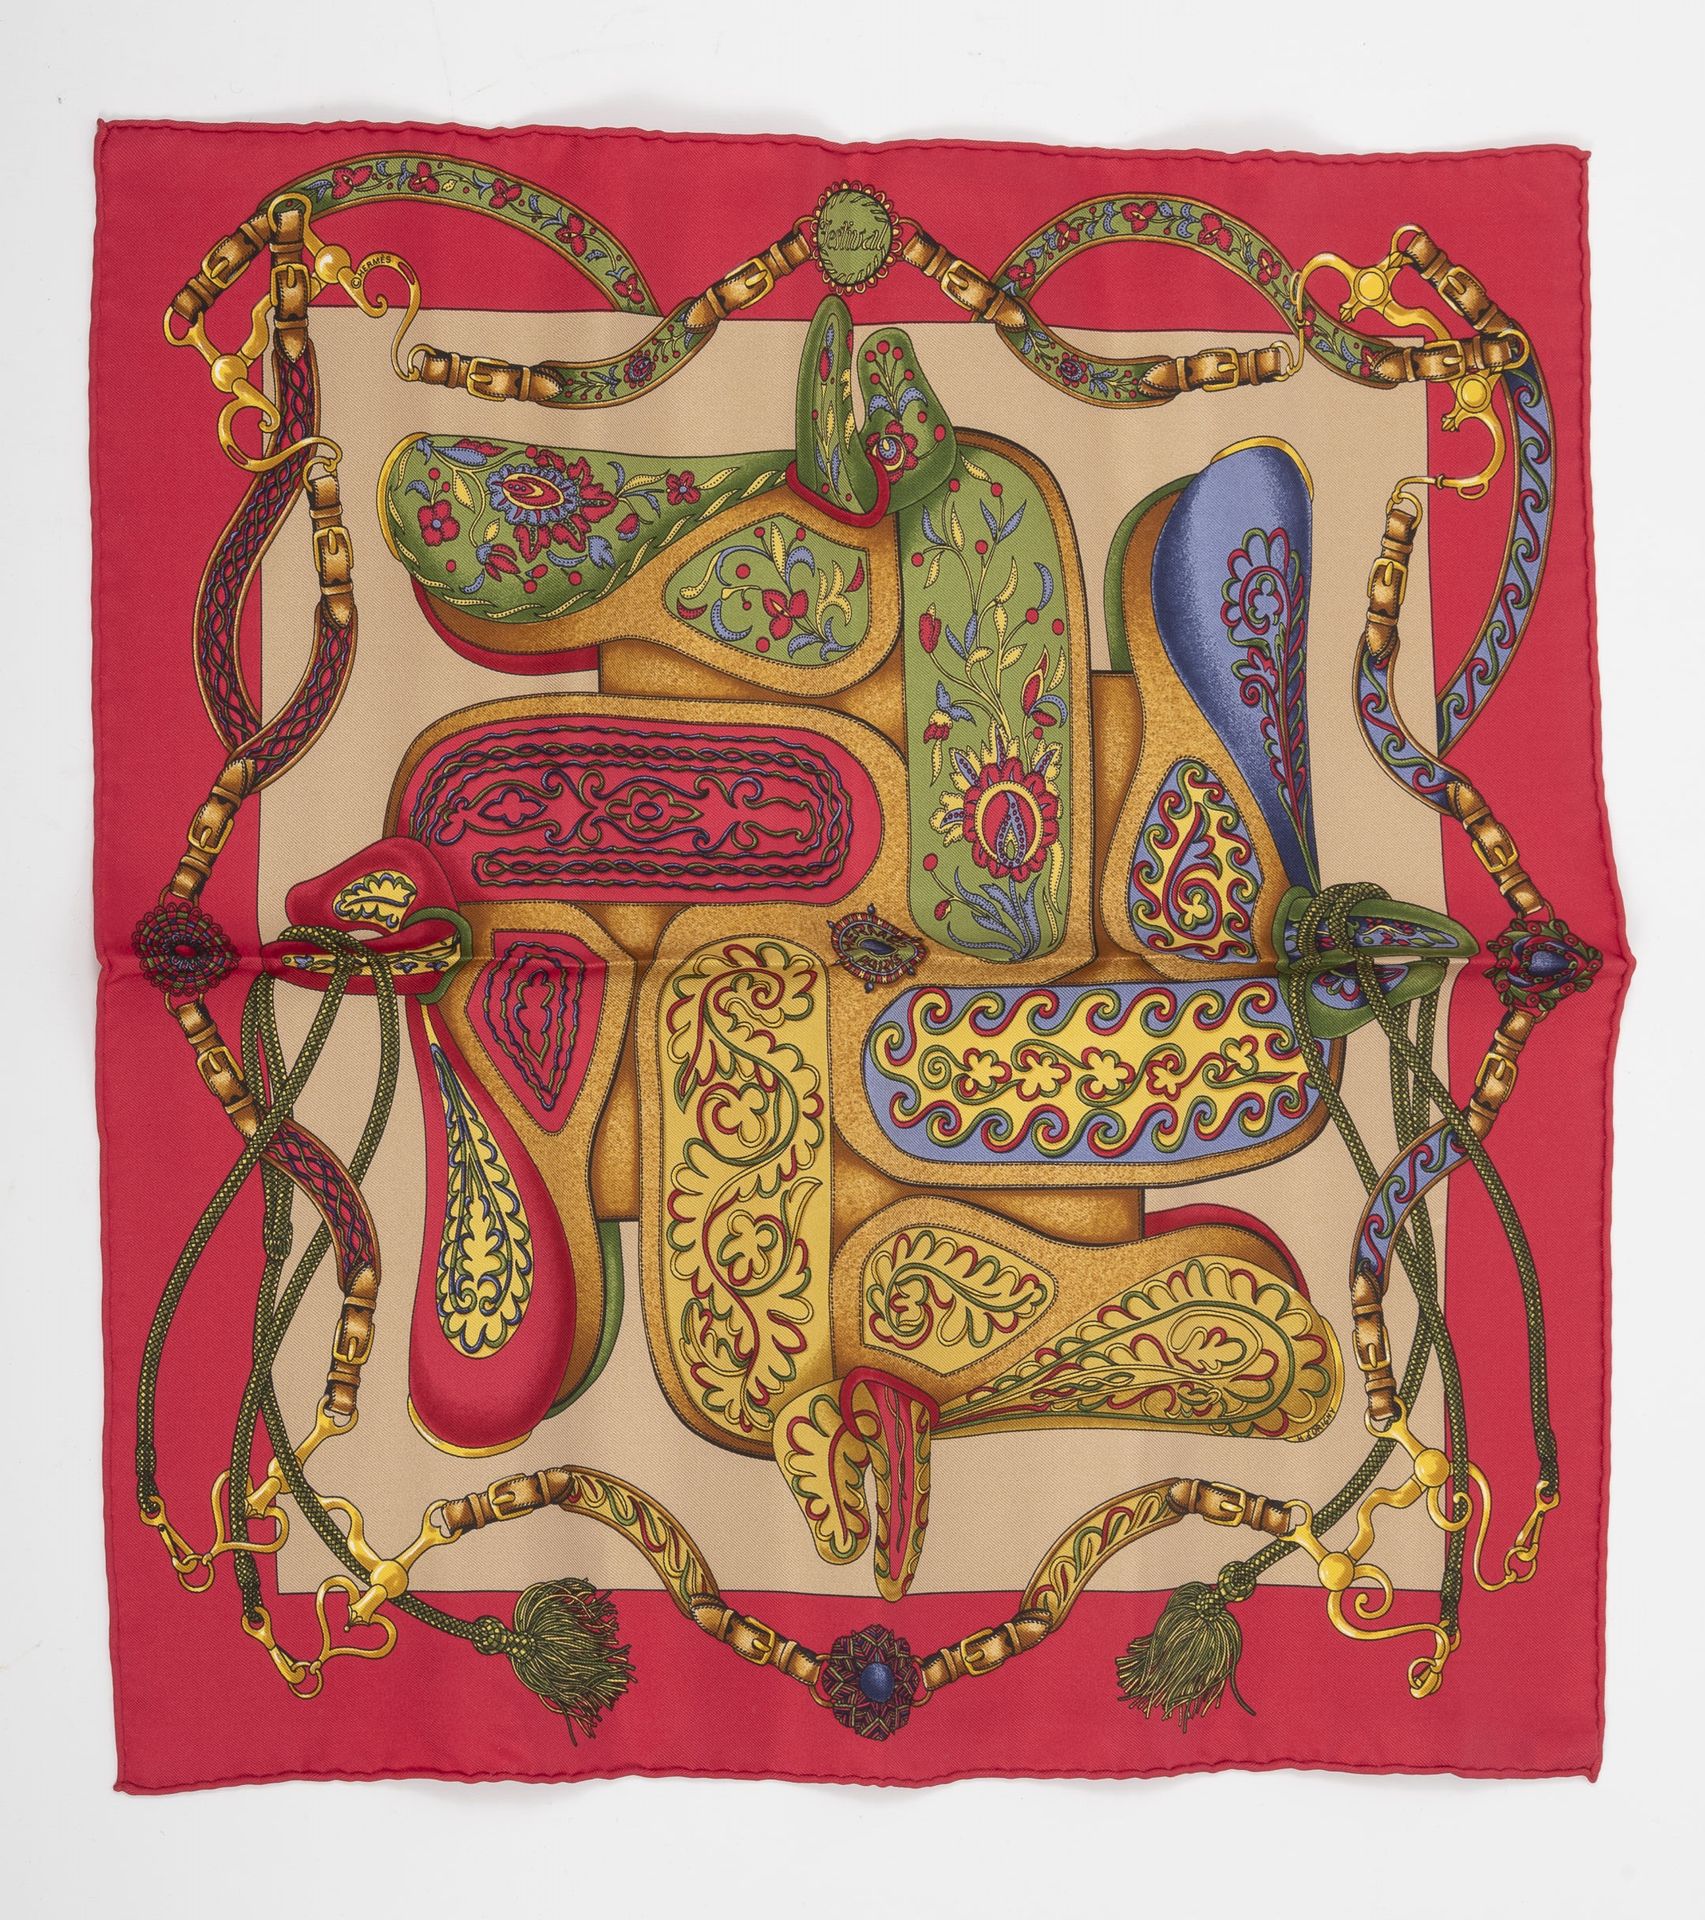 HERMES Paris, 小型印花丝质斜纹布手包，带马鞍设计，标题为 "节日"，紫红色边框。

42 x 42厘米。

带盒子的房子（磨损）。